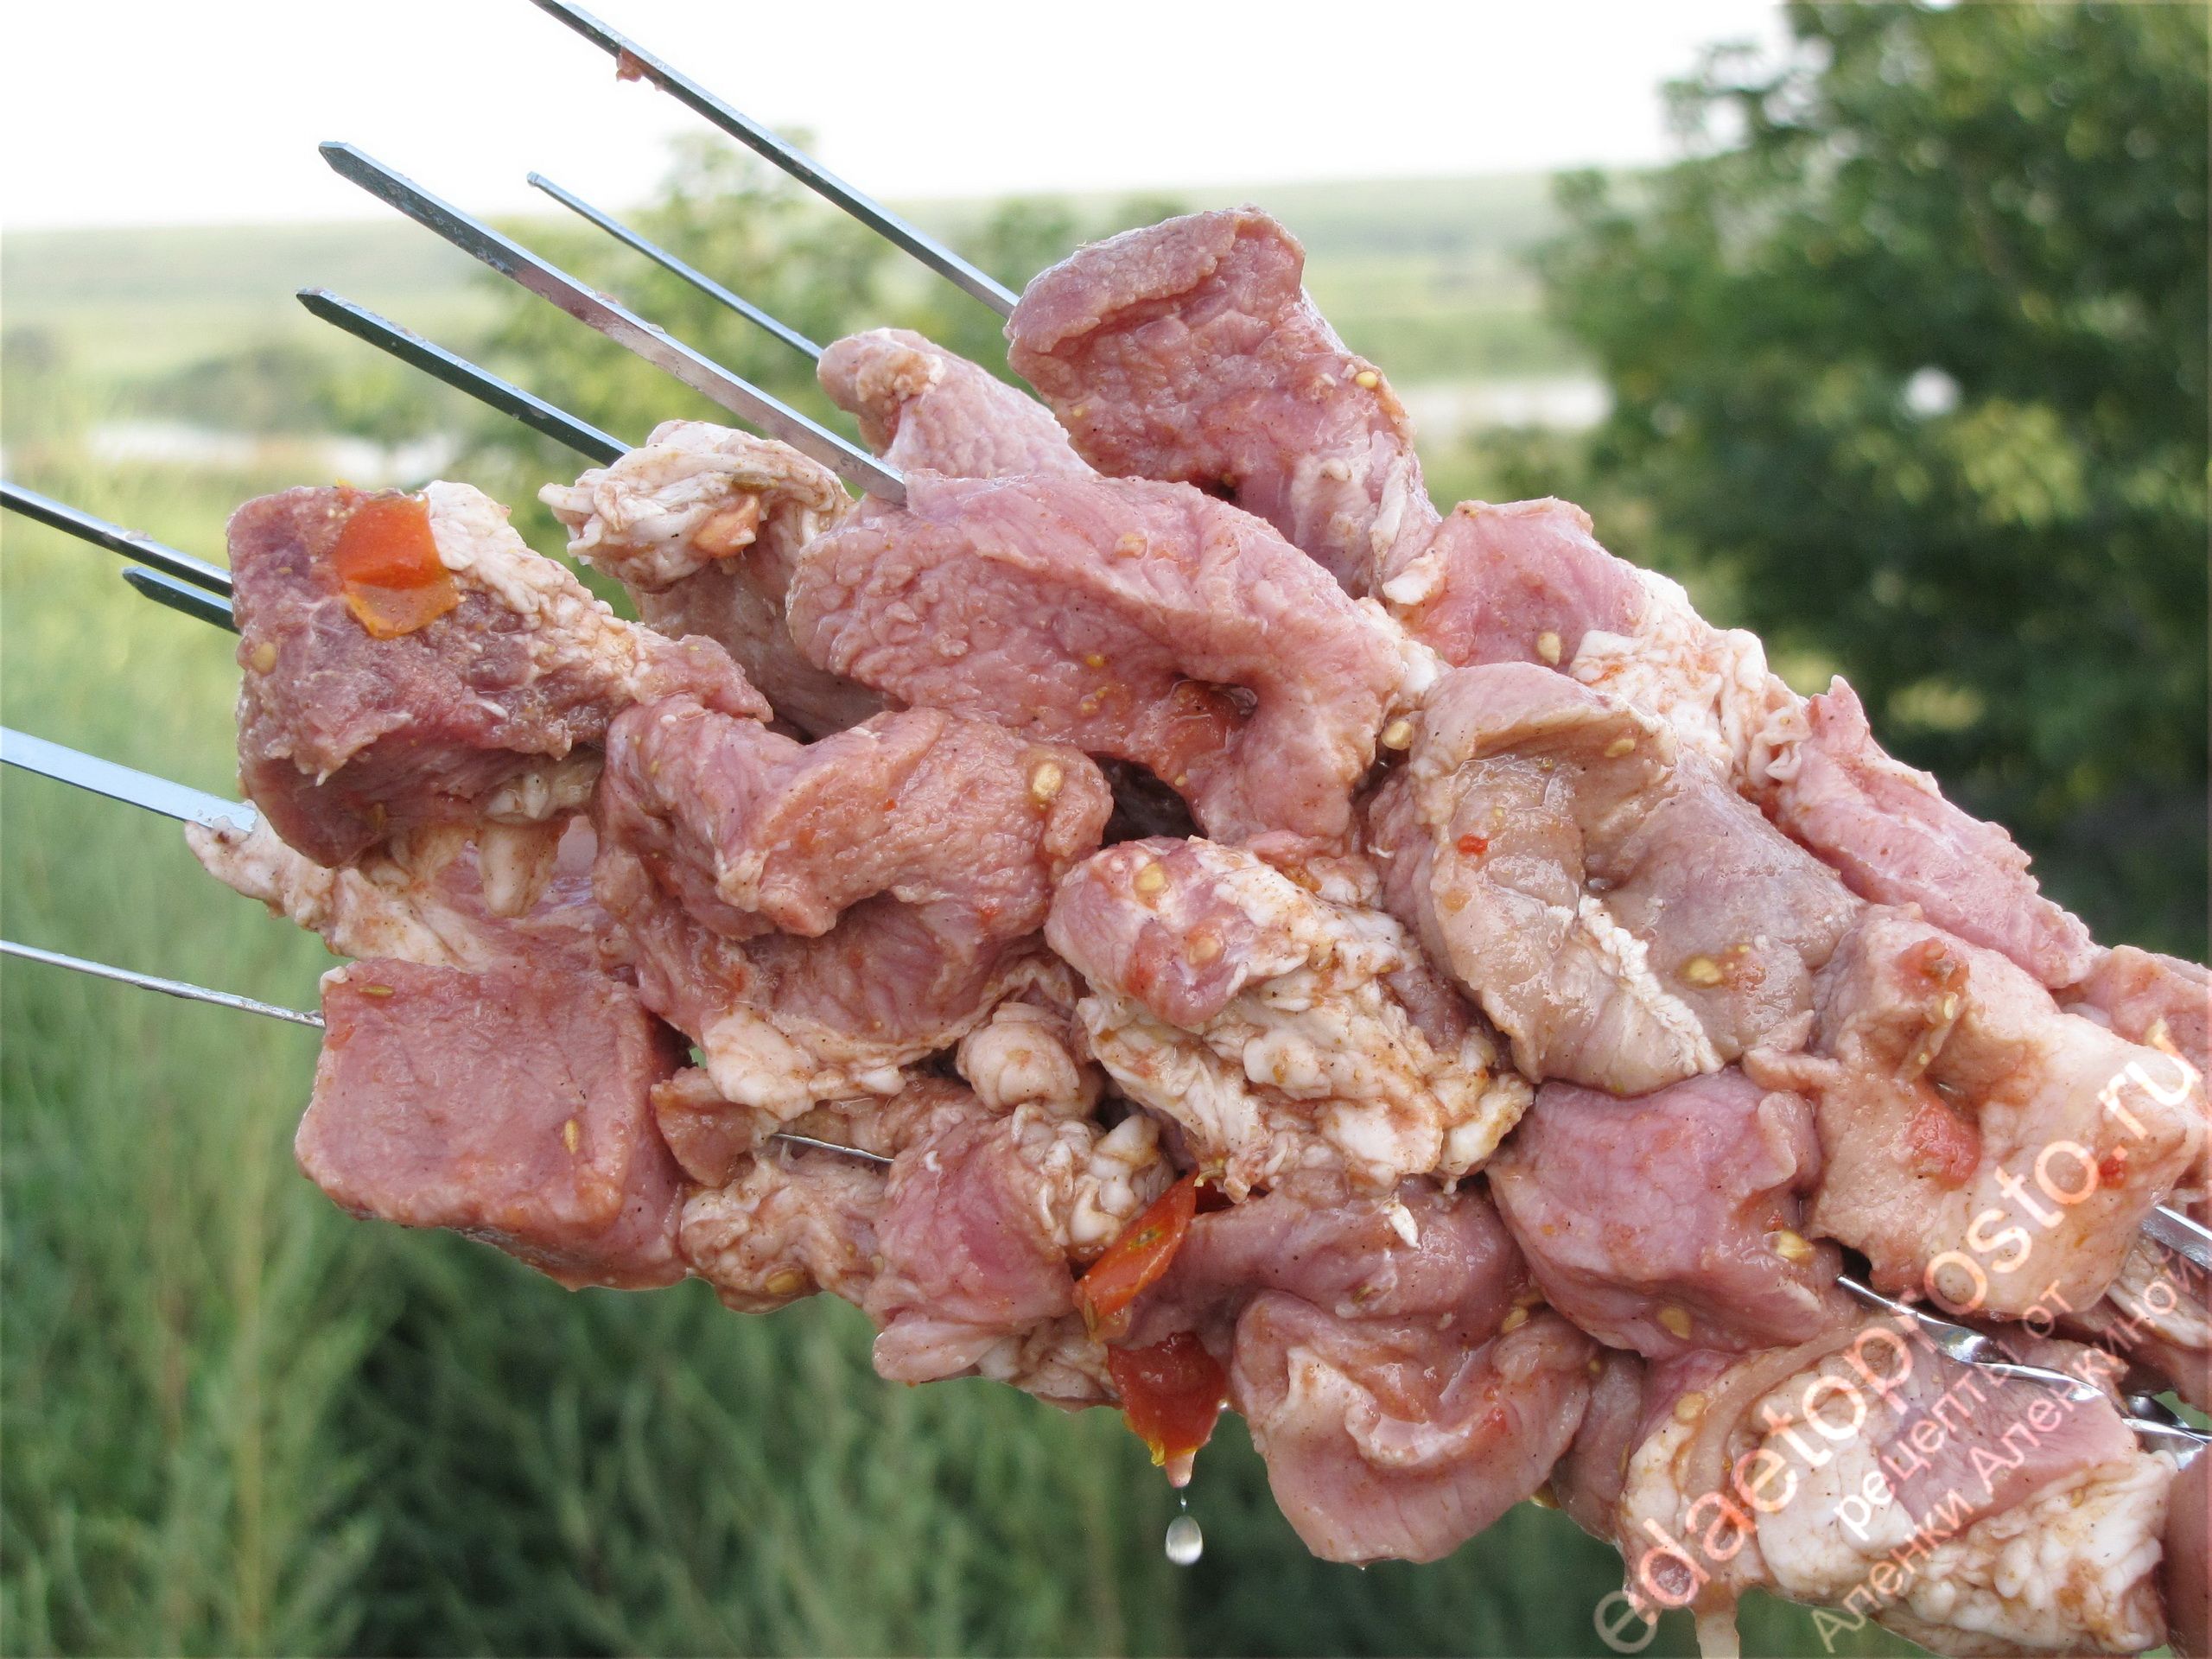 фото мяса на шампурах, фото шашлыков 3